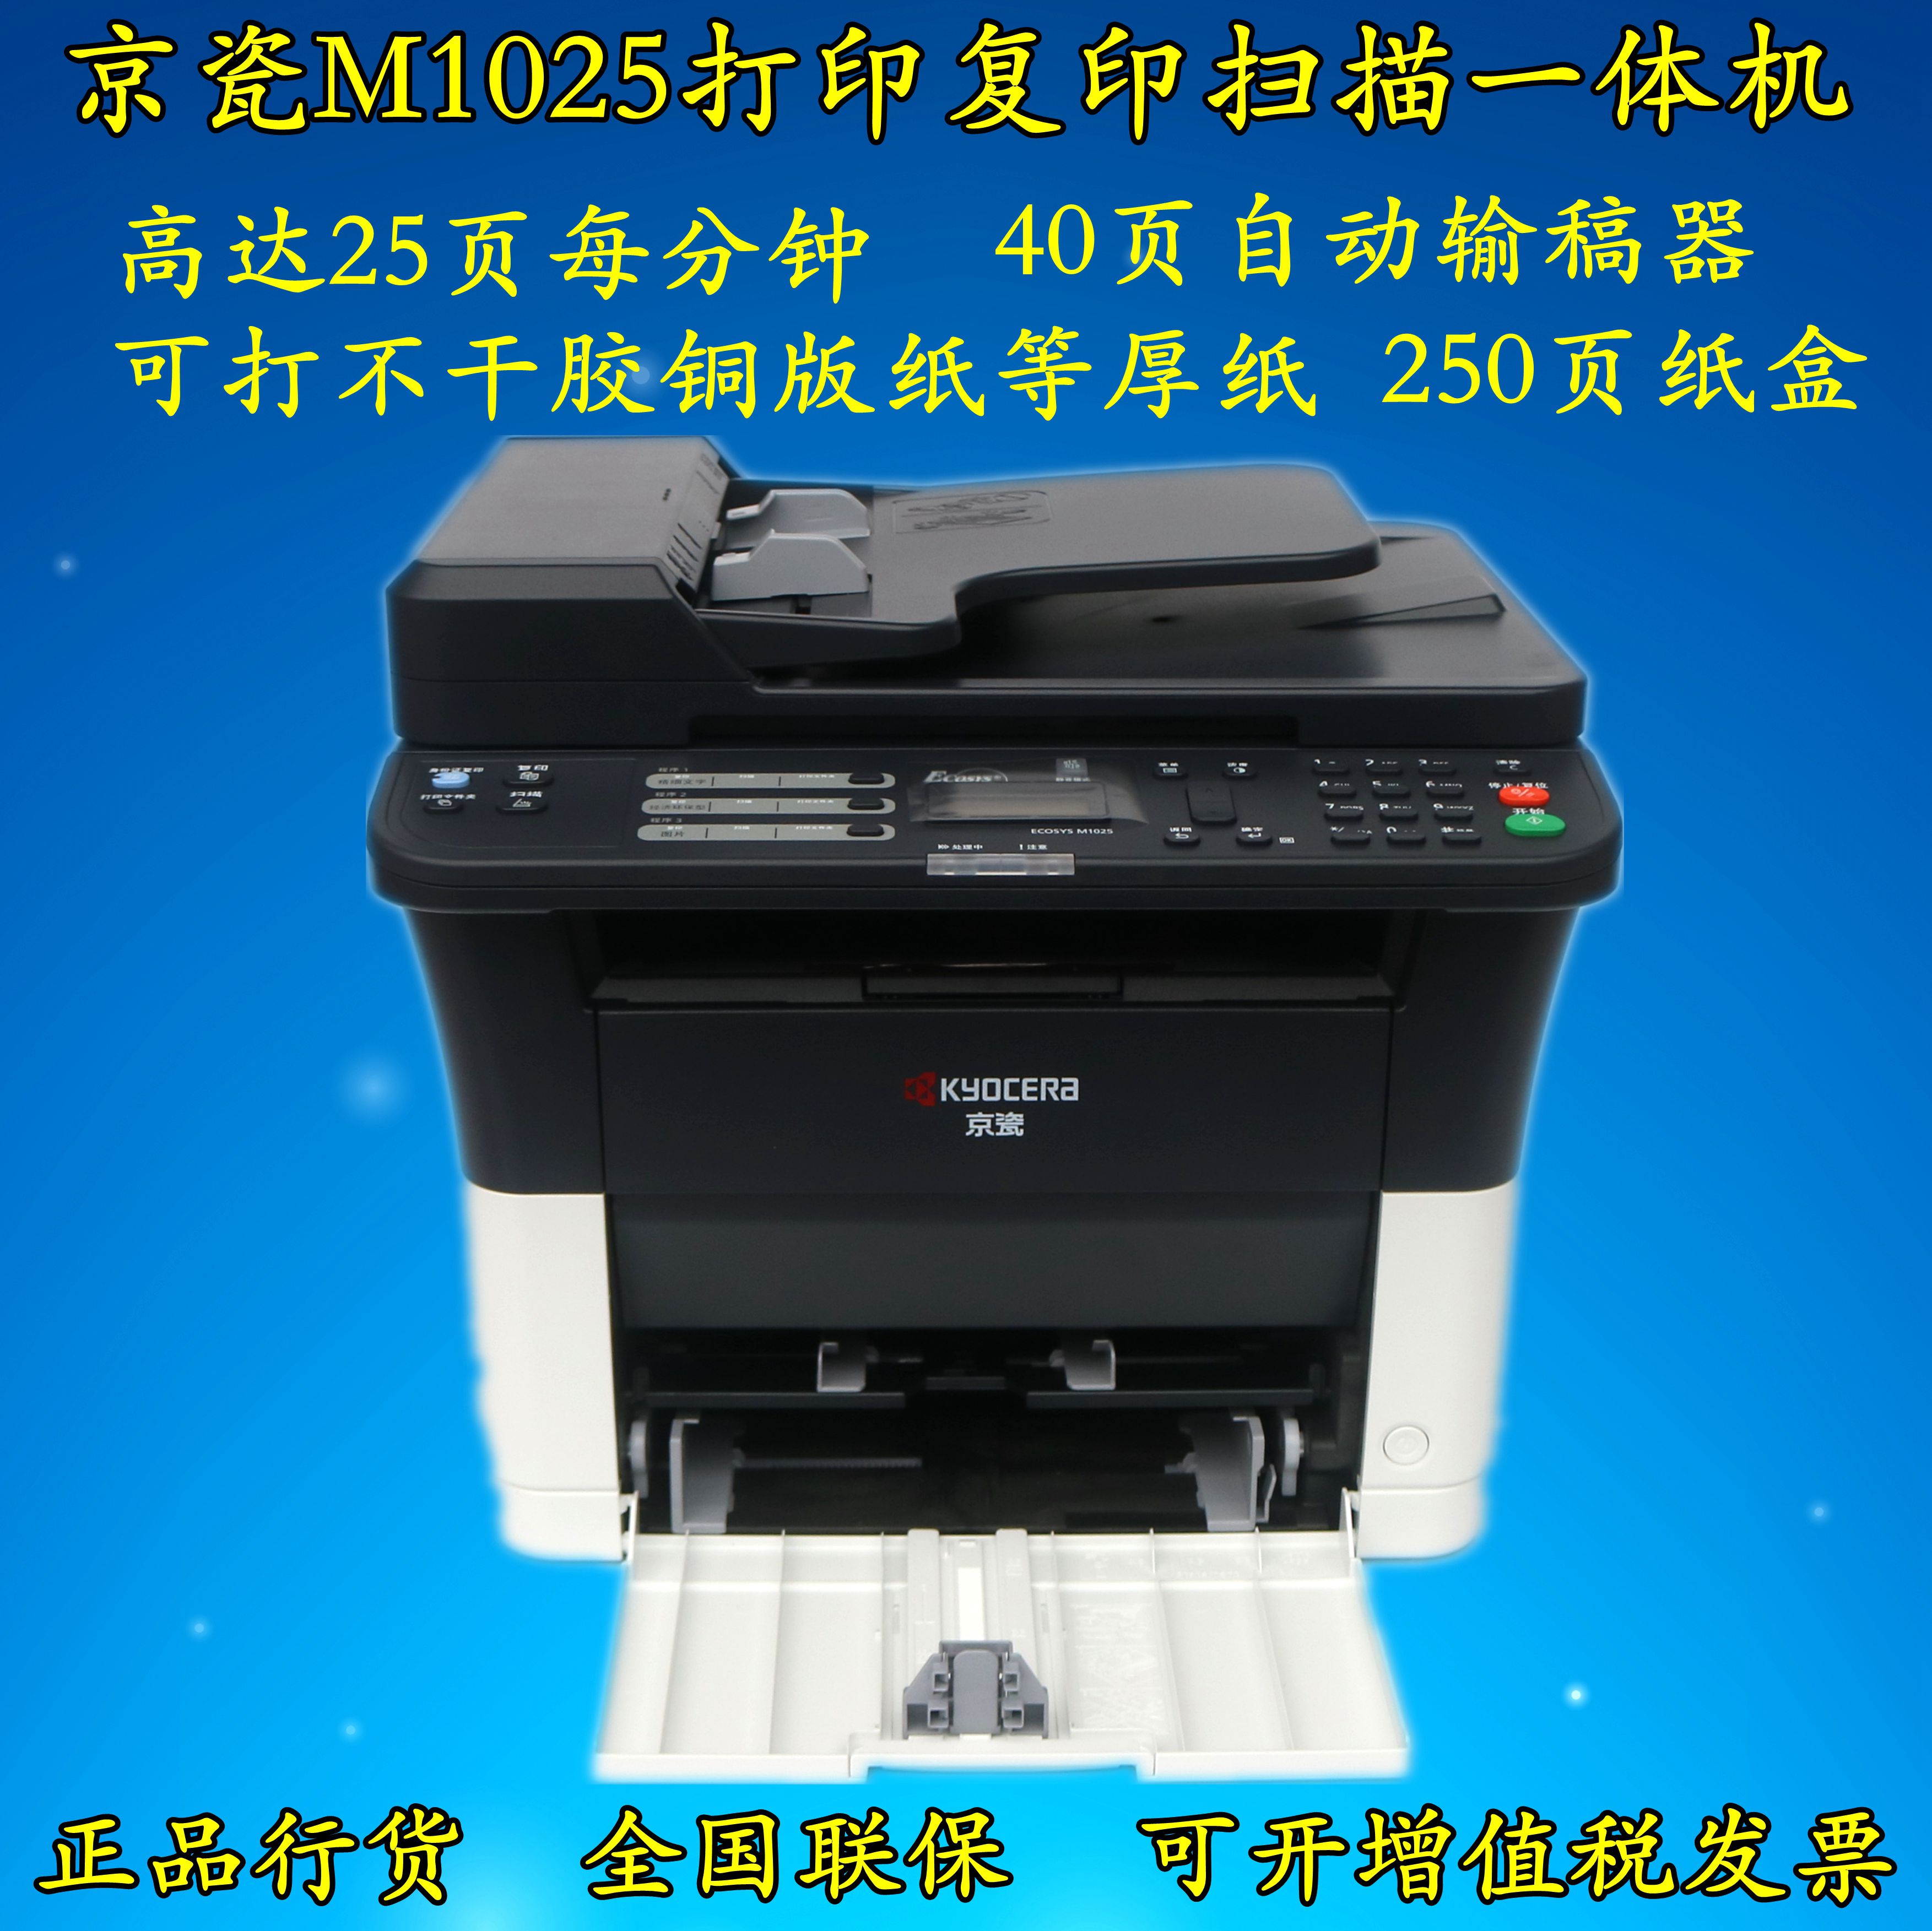 京瓷M1025/FS-1025MFP多功能黑白激光打印复印扫描一体机双面网络